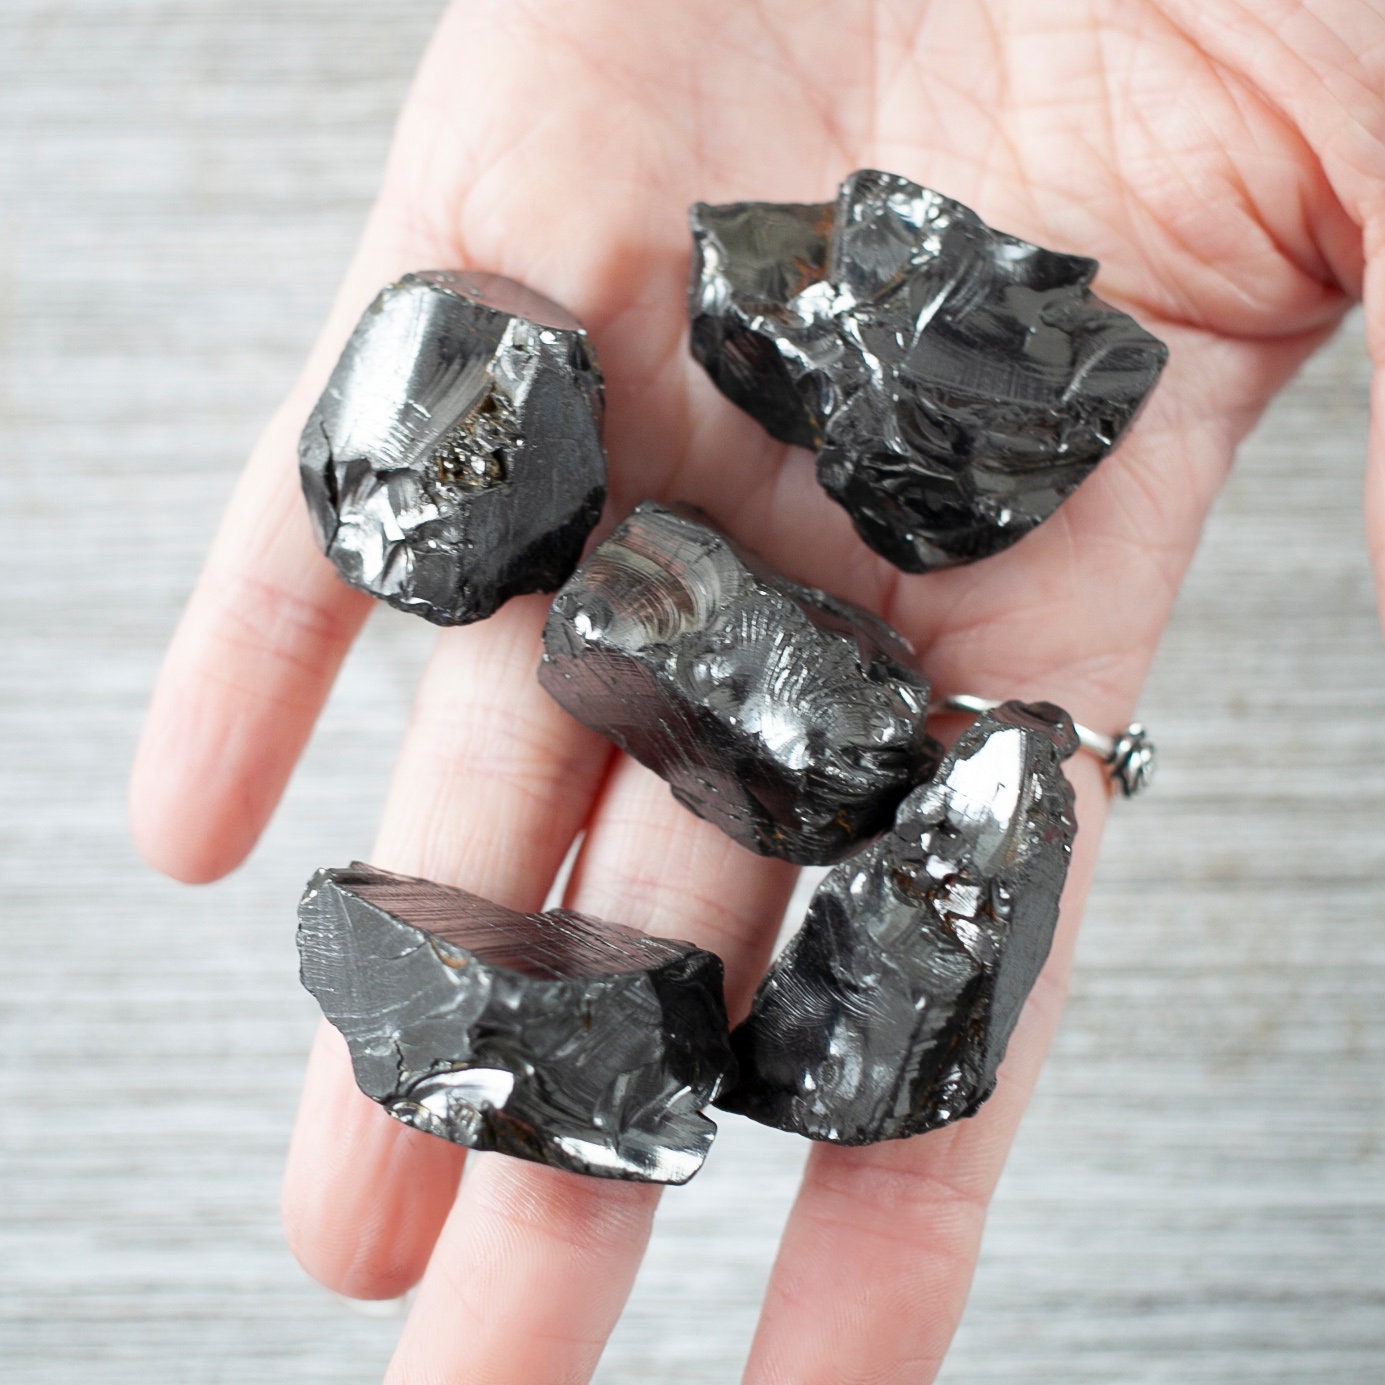 Shungite - Piedras de carelia crudas, minerales en bruto, piedra de agua,  especímenes de cristal natural, 5 unidades